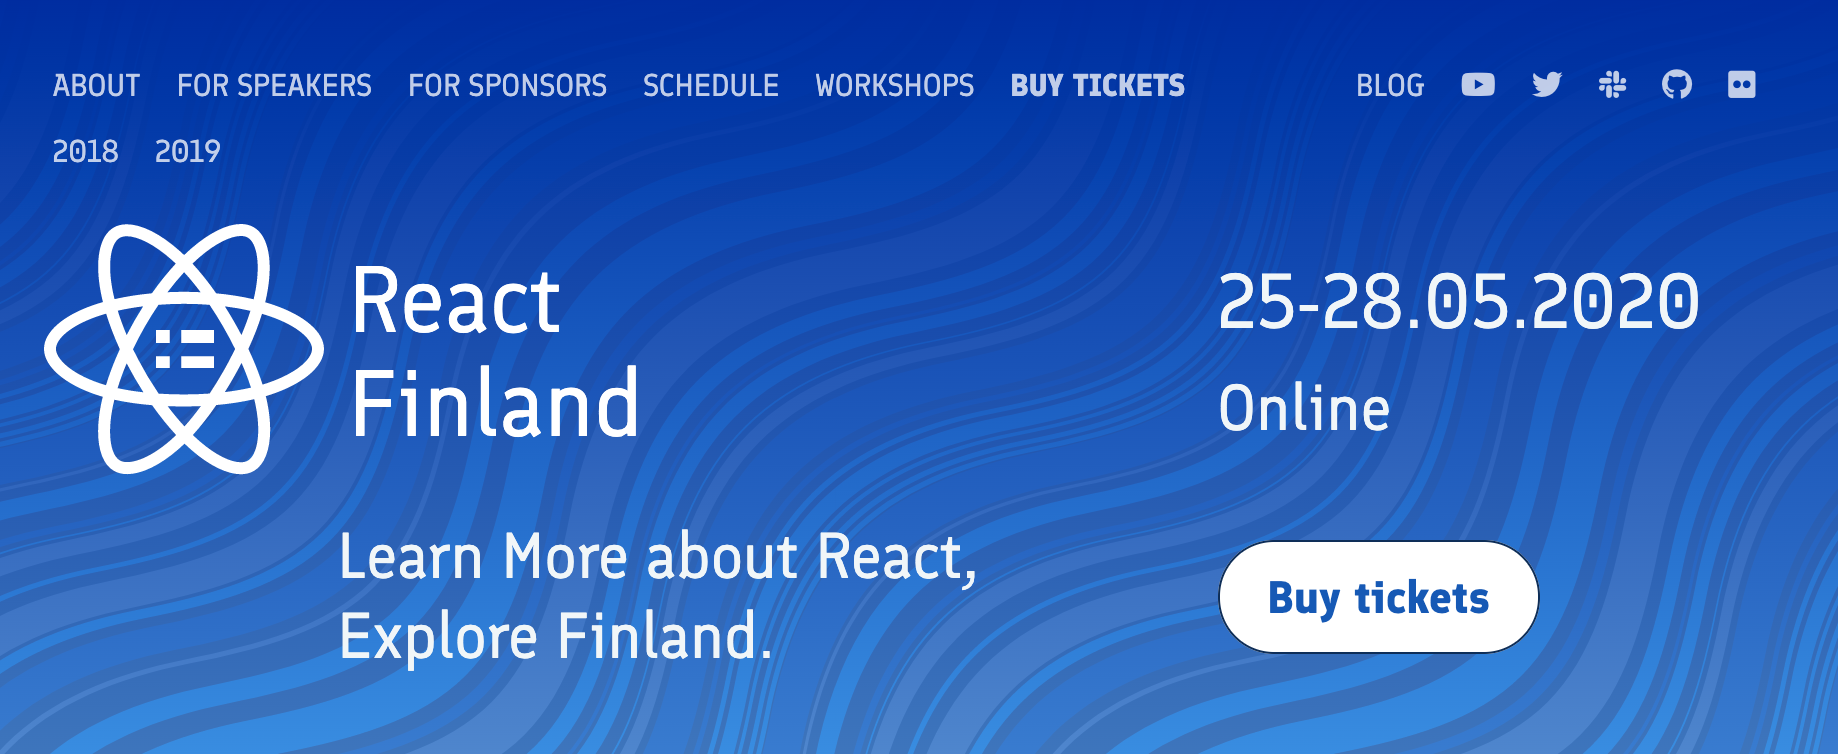 react finland